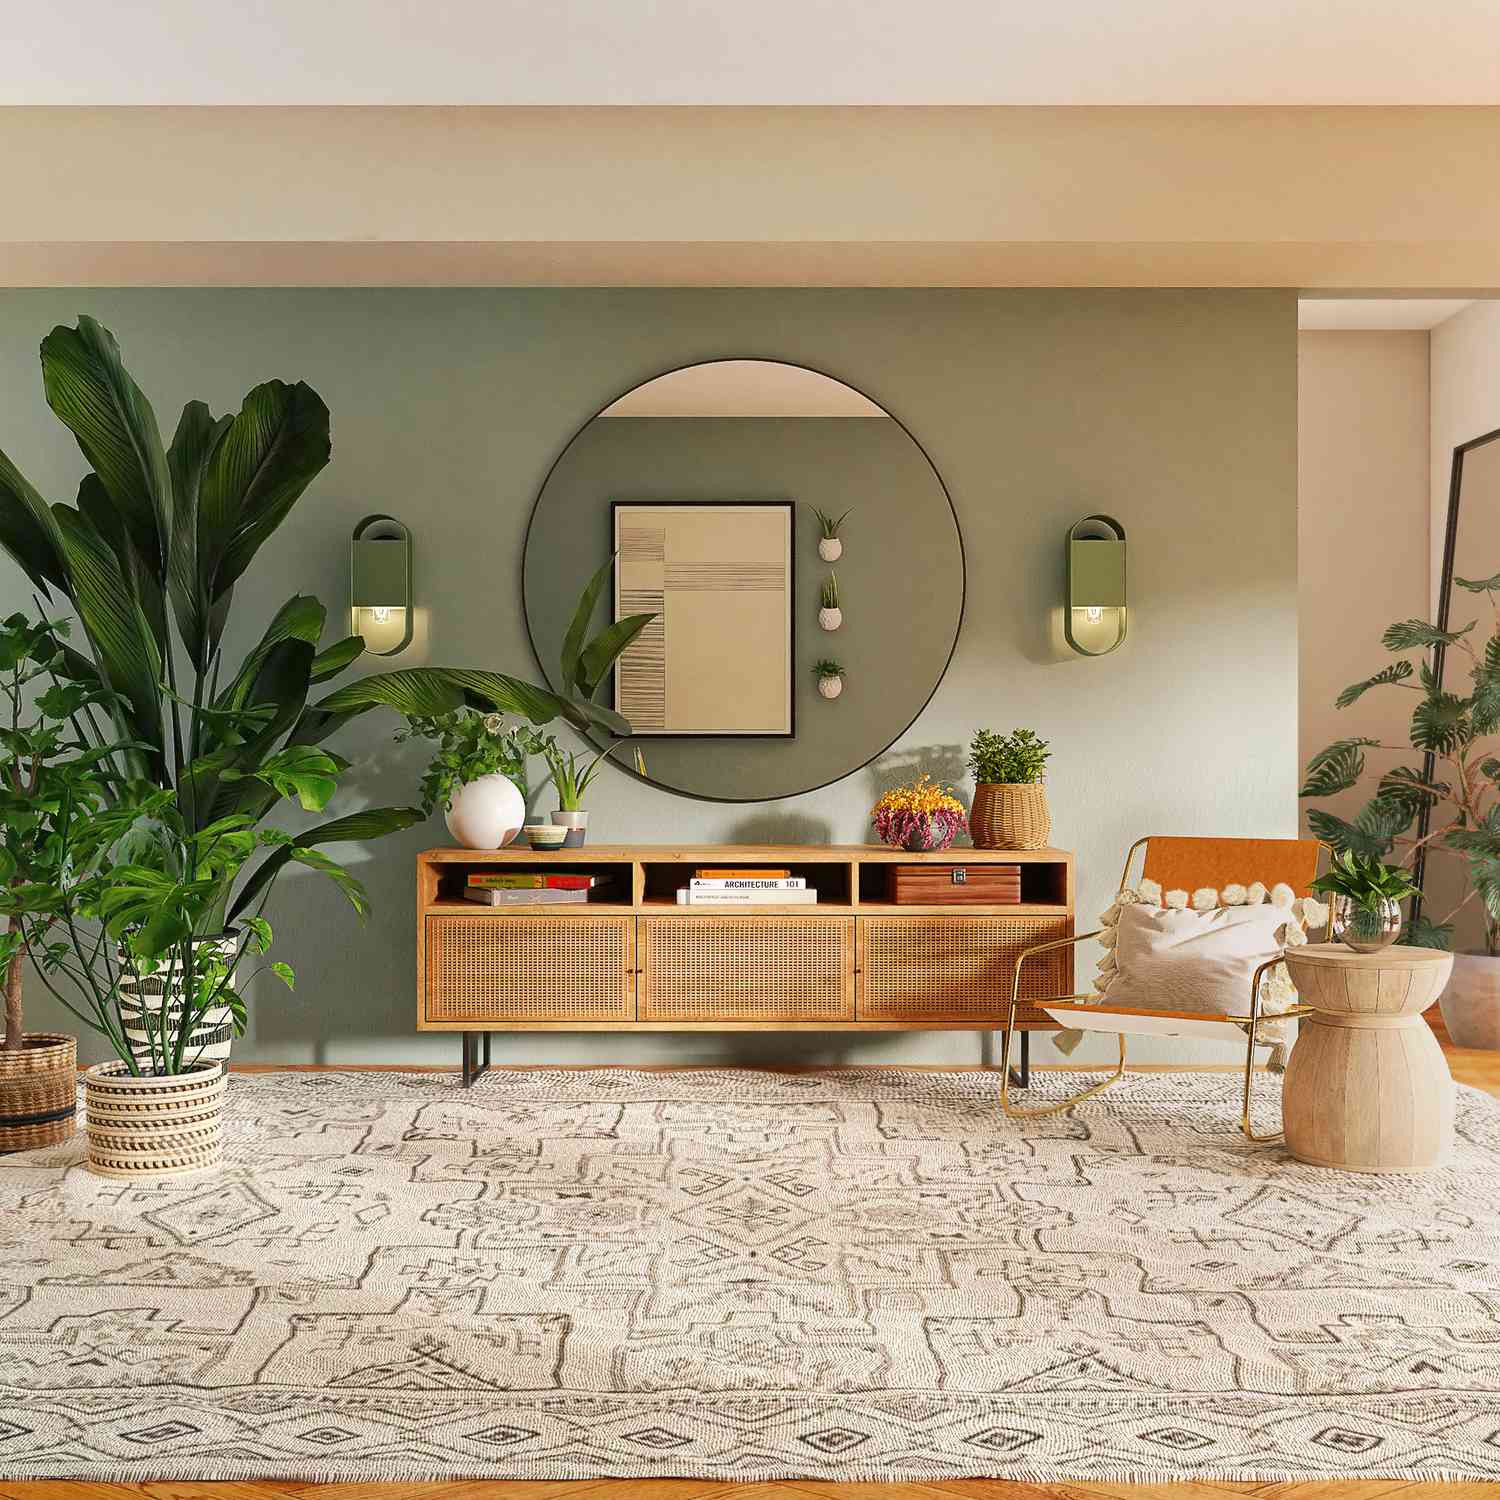 Intérieur de maison avec peinture murale vert menthe, miroir rond, et plantes